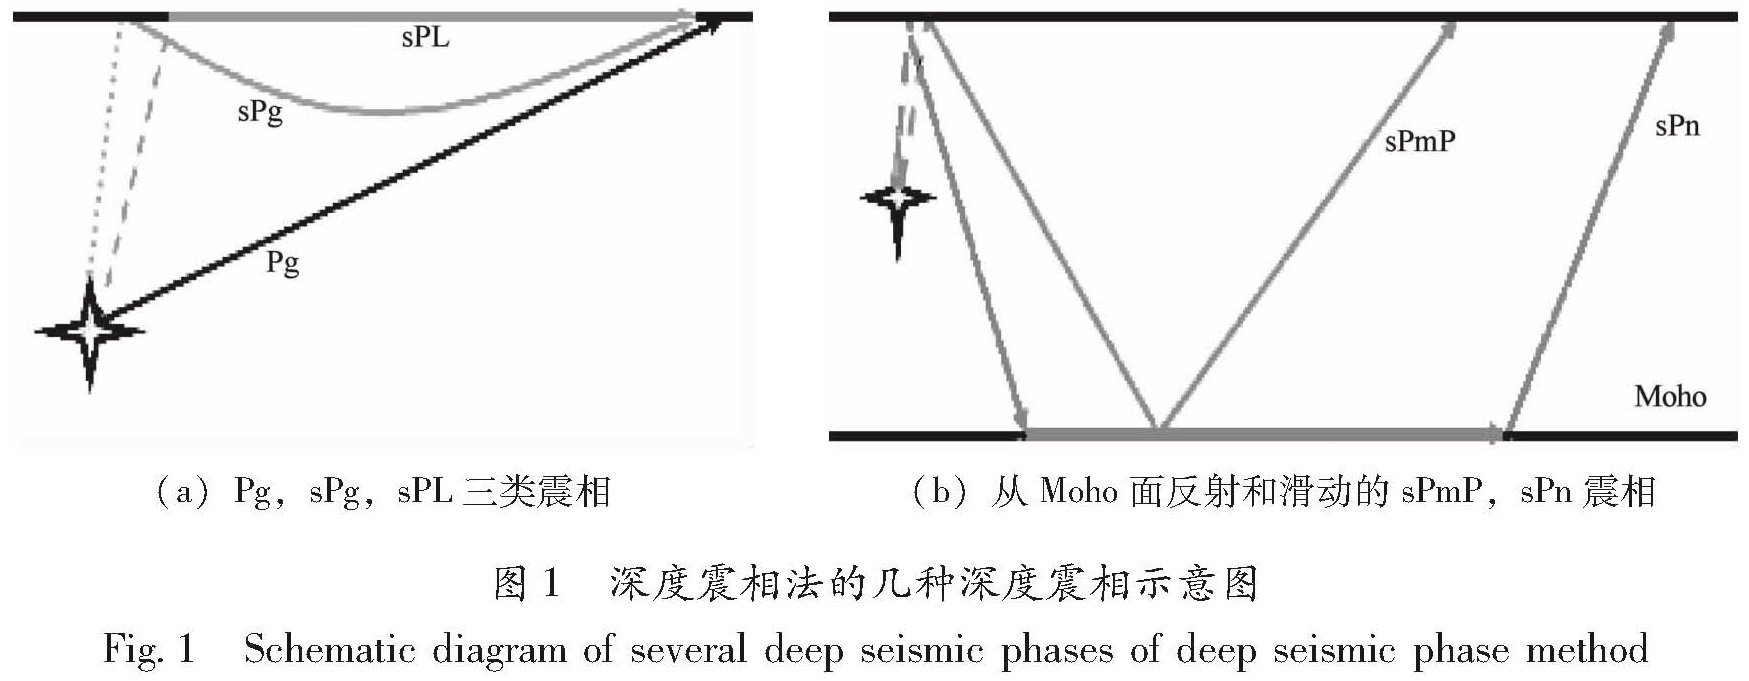 图1 深度震相法的几种深度震相示意图<br/>Fig.1 Schematic diagram of several deep seismic phases of deep seismic phase method